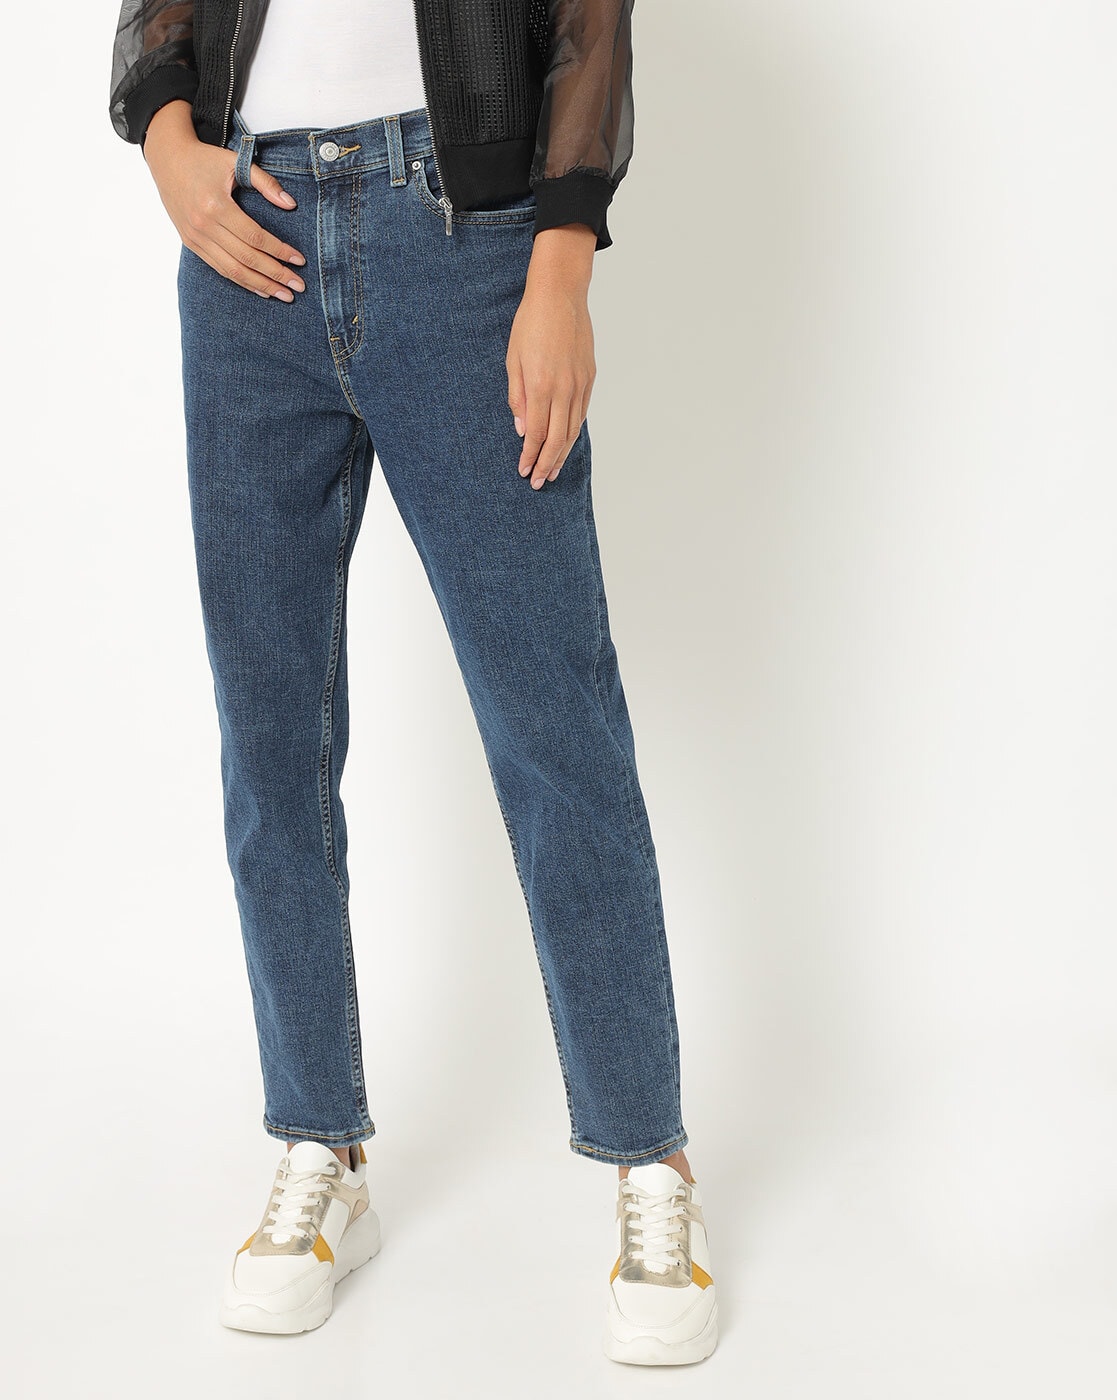 levis jeans mum Today's Deals - OFF 70%